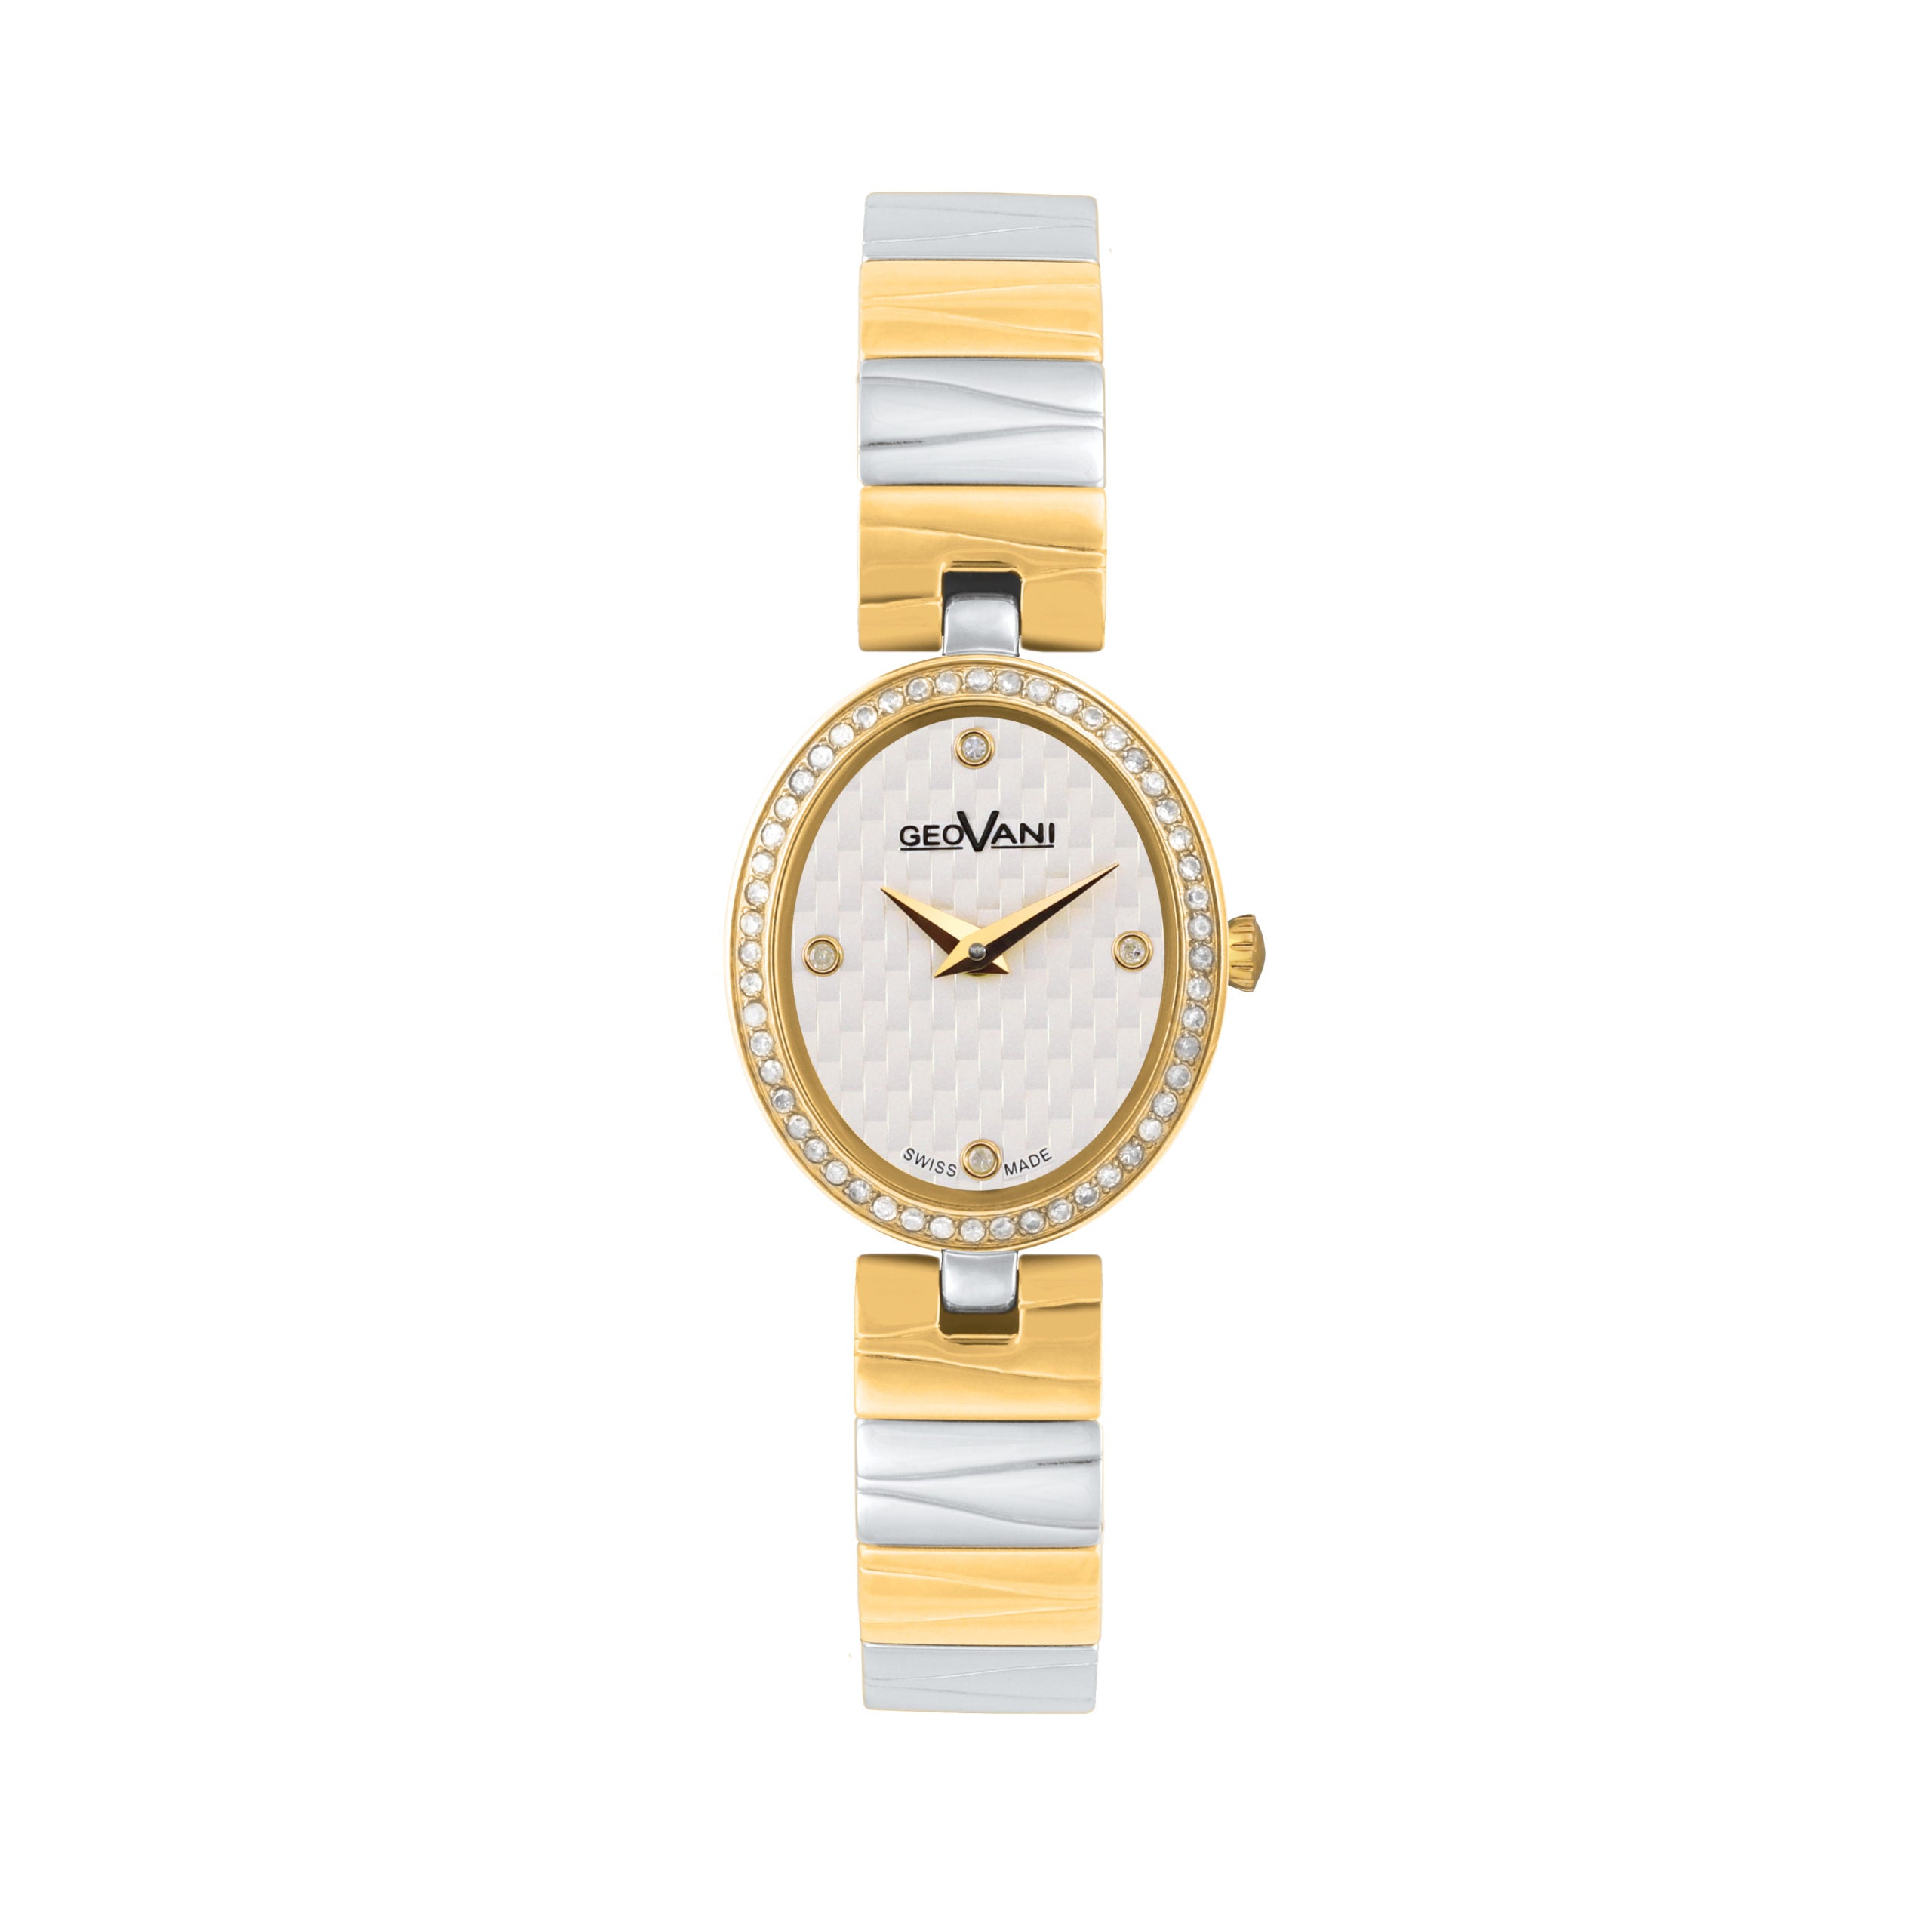 Giovanni Women's Swiss Quartz Watch with White Dial - GEO-0014